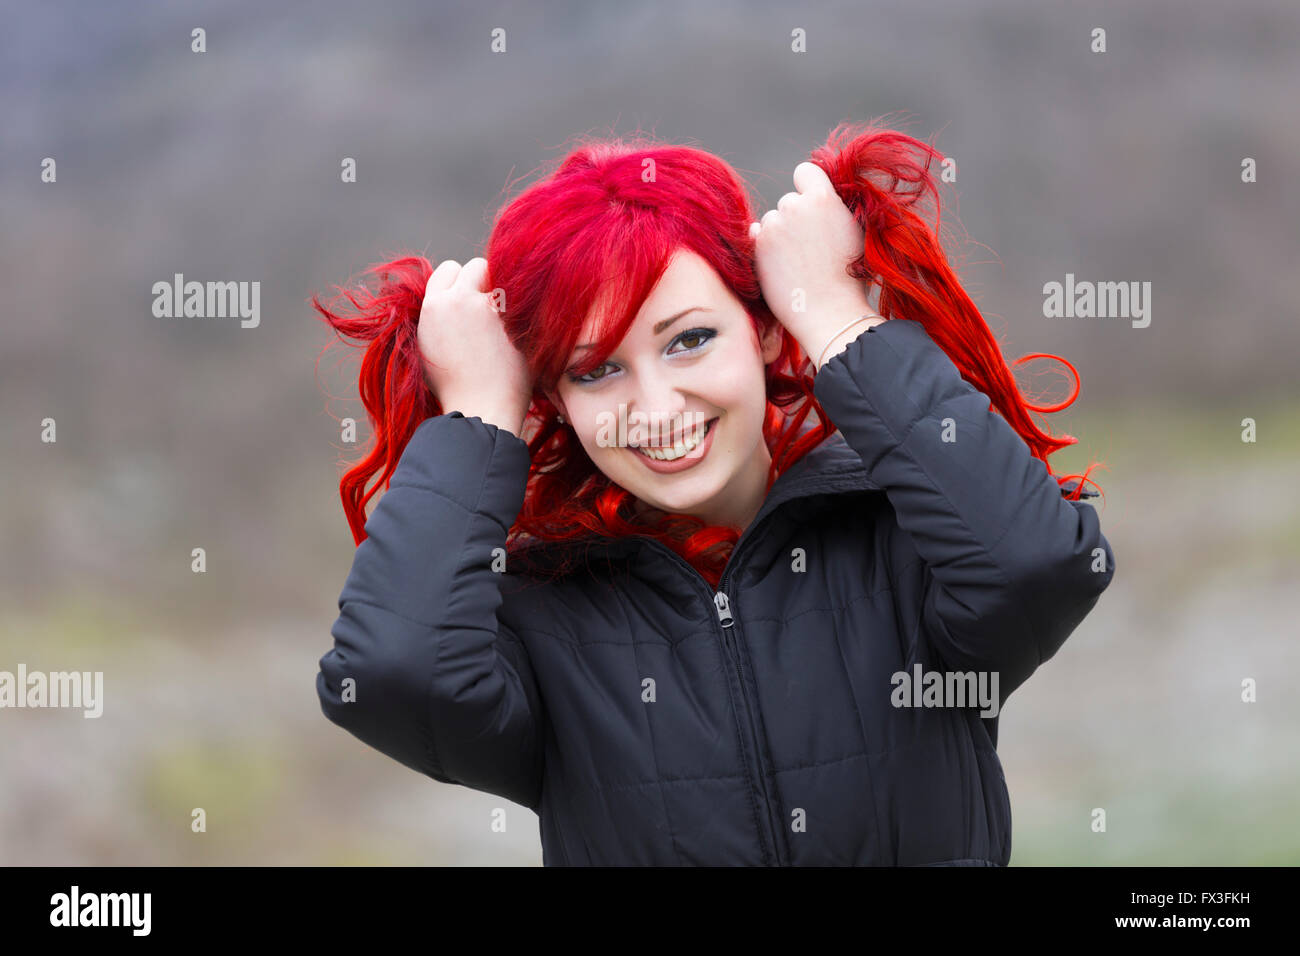 Rothaarige Jugendliche Porträt, lächelt beide Hände halten halten halten halten halten halten Auseinanderziehen Rote Haare Augenheißer Augenkontakt Stockfoto